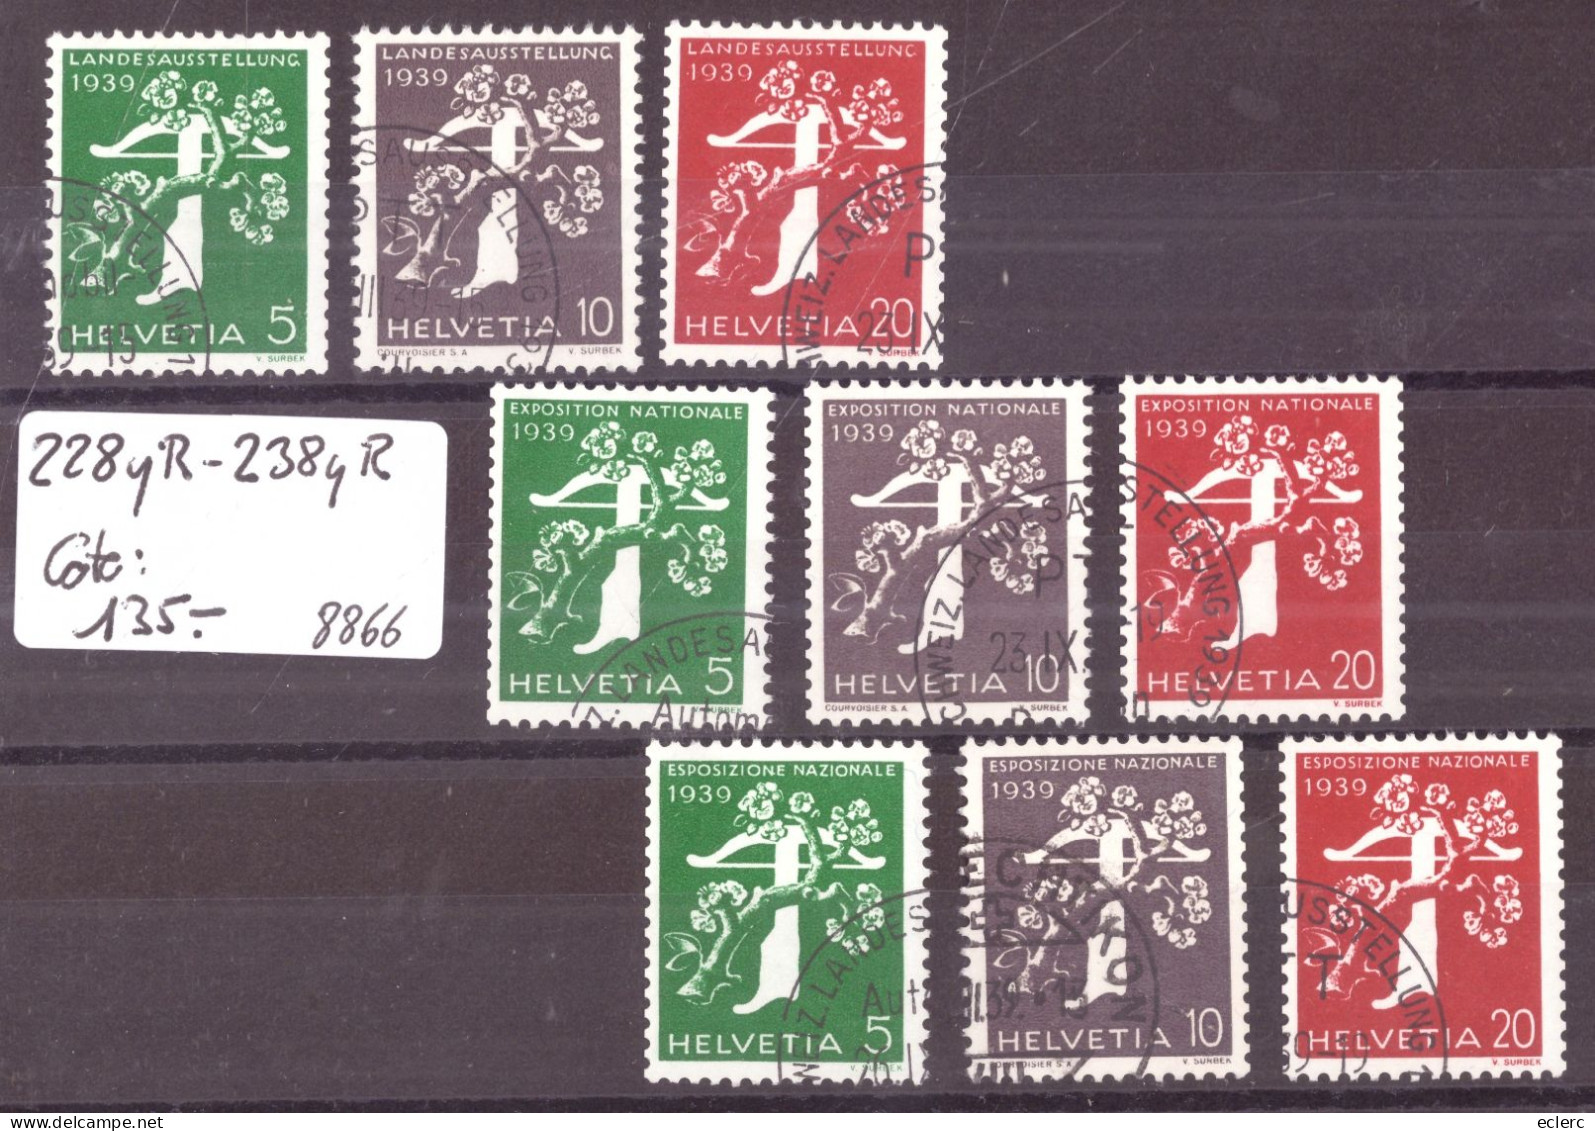 EXPOSITION ZÜRICH 1939 - TIMBRES DE ROULEAUX - No 228yR - 238yR  OBLITERES ( PAPIER LISSE ) - COTE: 135.- - Coil Stamps